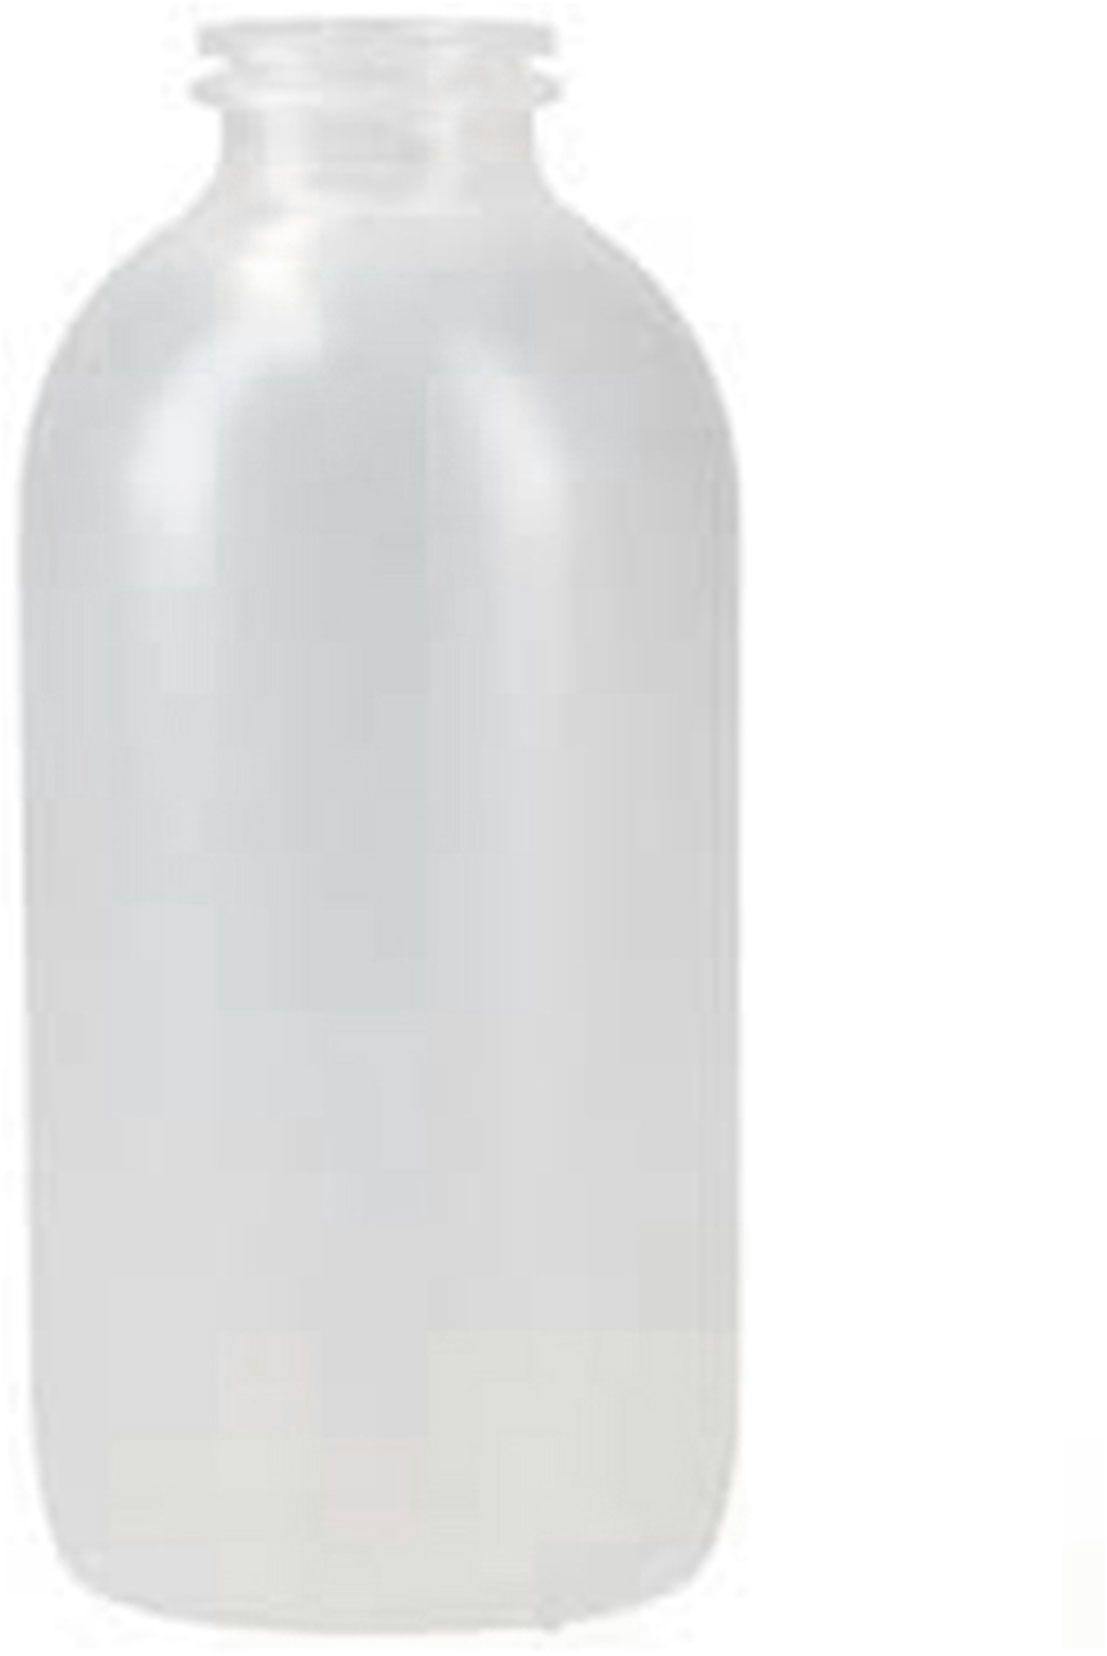 Bottle SUERO 250 CC. NAT D32  PP EST / BETA P. PLAST.